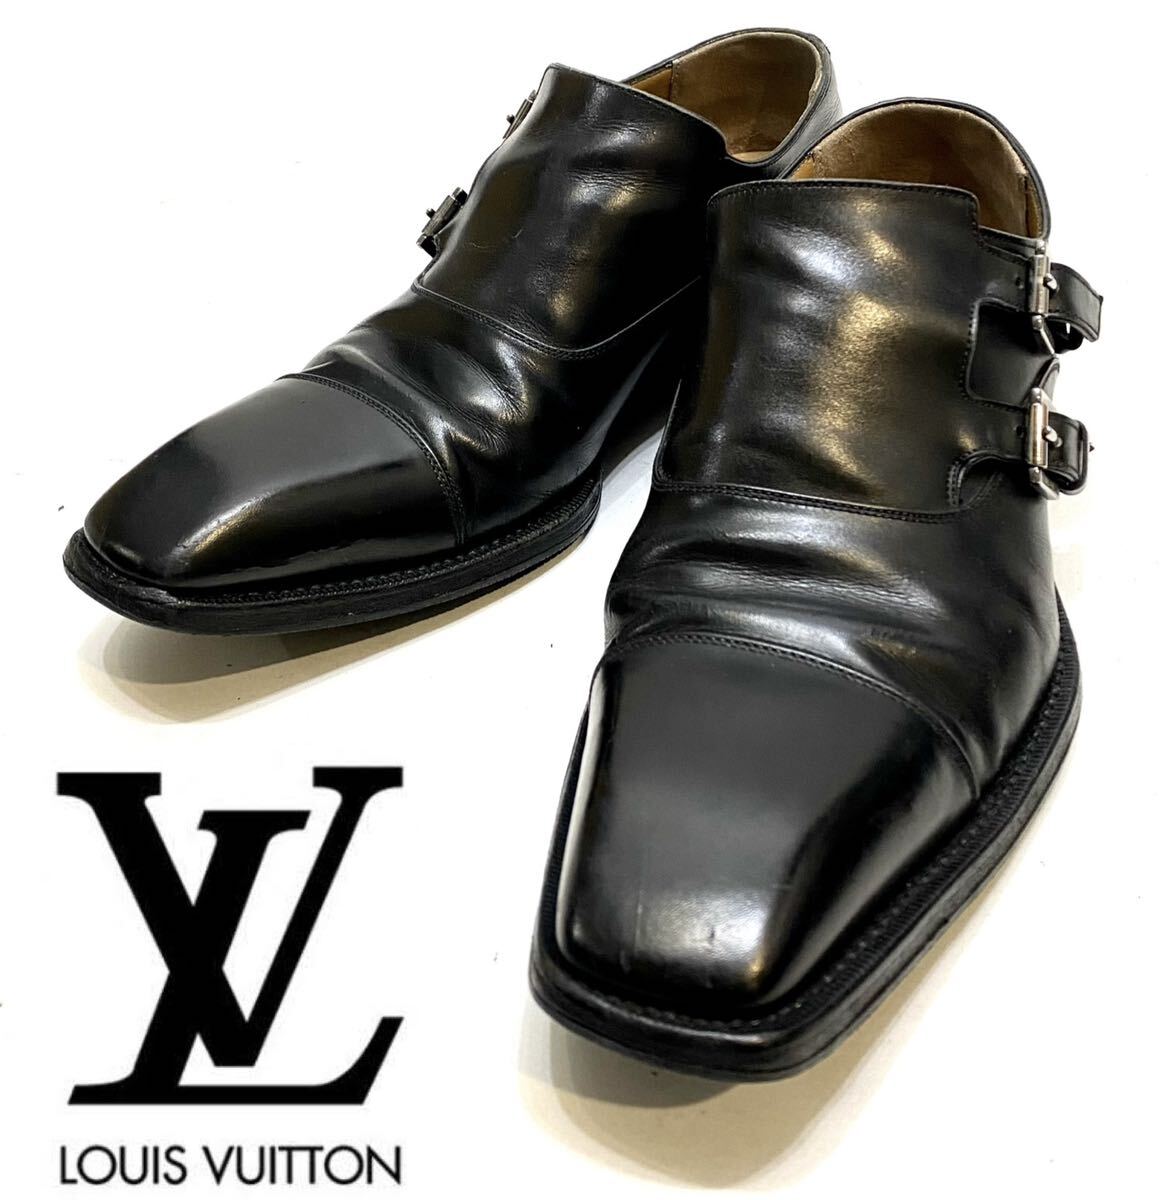 LOUIS VUITTON MENS ダブルモンクストラップ レザーシューズ ルイヴィトン 革靴 ドレスshoes ビジネス ブラック 7 イタリア製 26cm_画像1